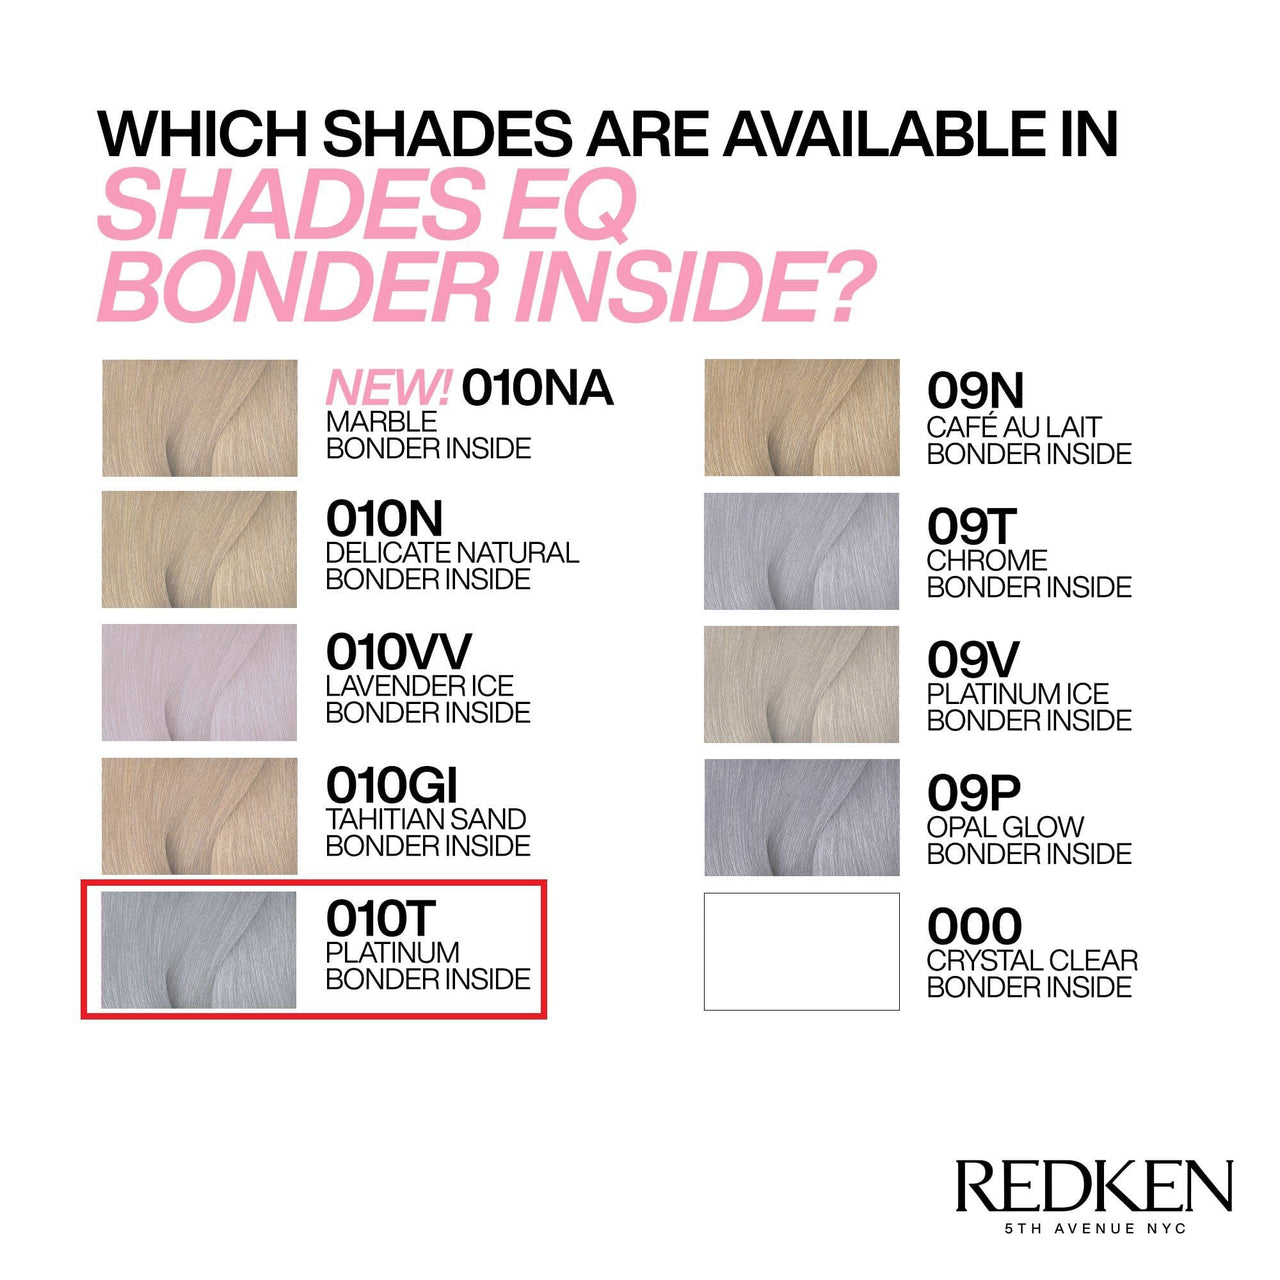 REDKEN - SHADES EQ_Shades EQ Bonder Inside 04NCh Dark Chocolate_Cosmetic World